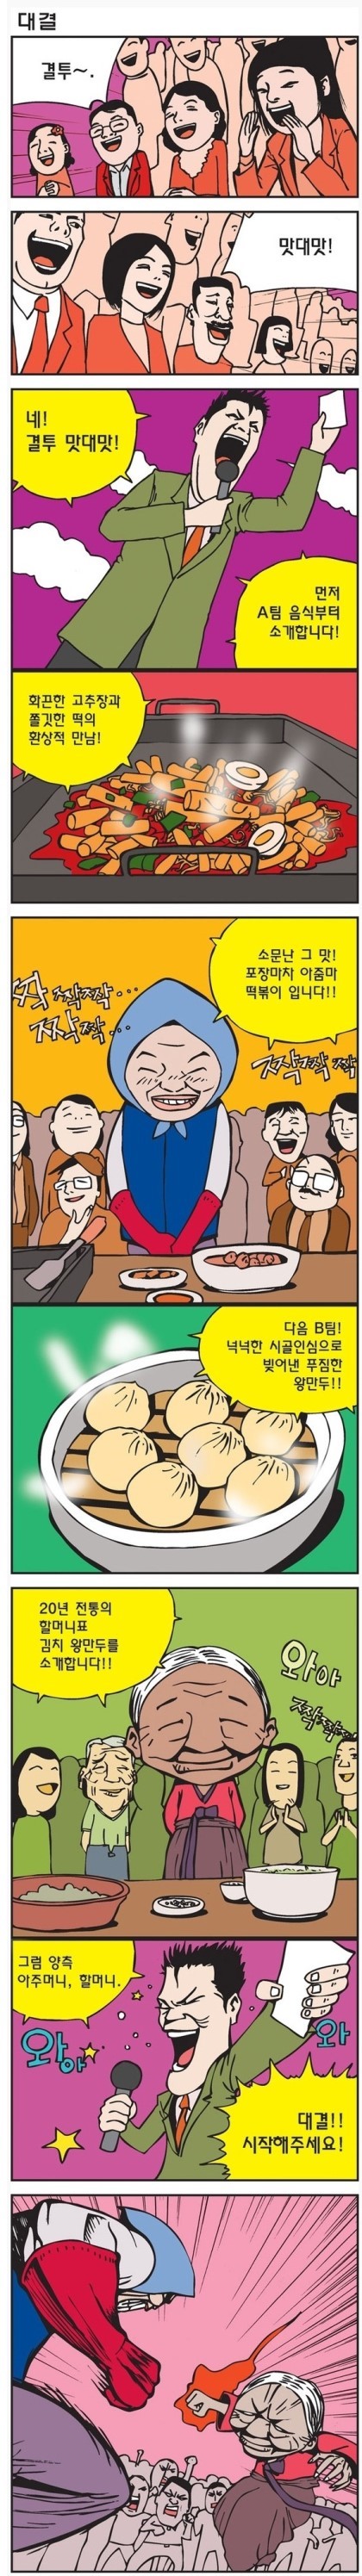 포장마차 아줌마 vs 만두 할머니.jpg